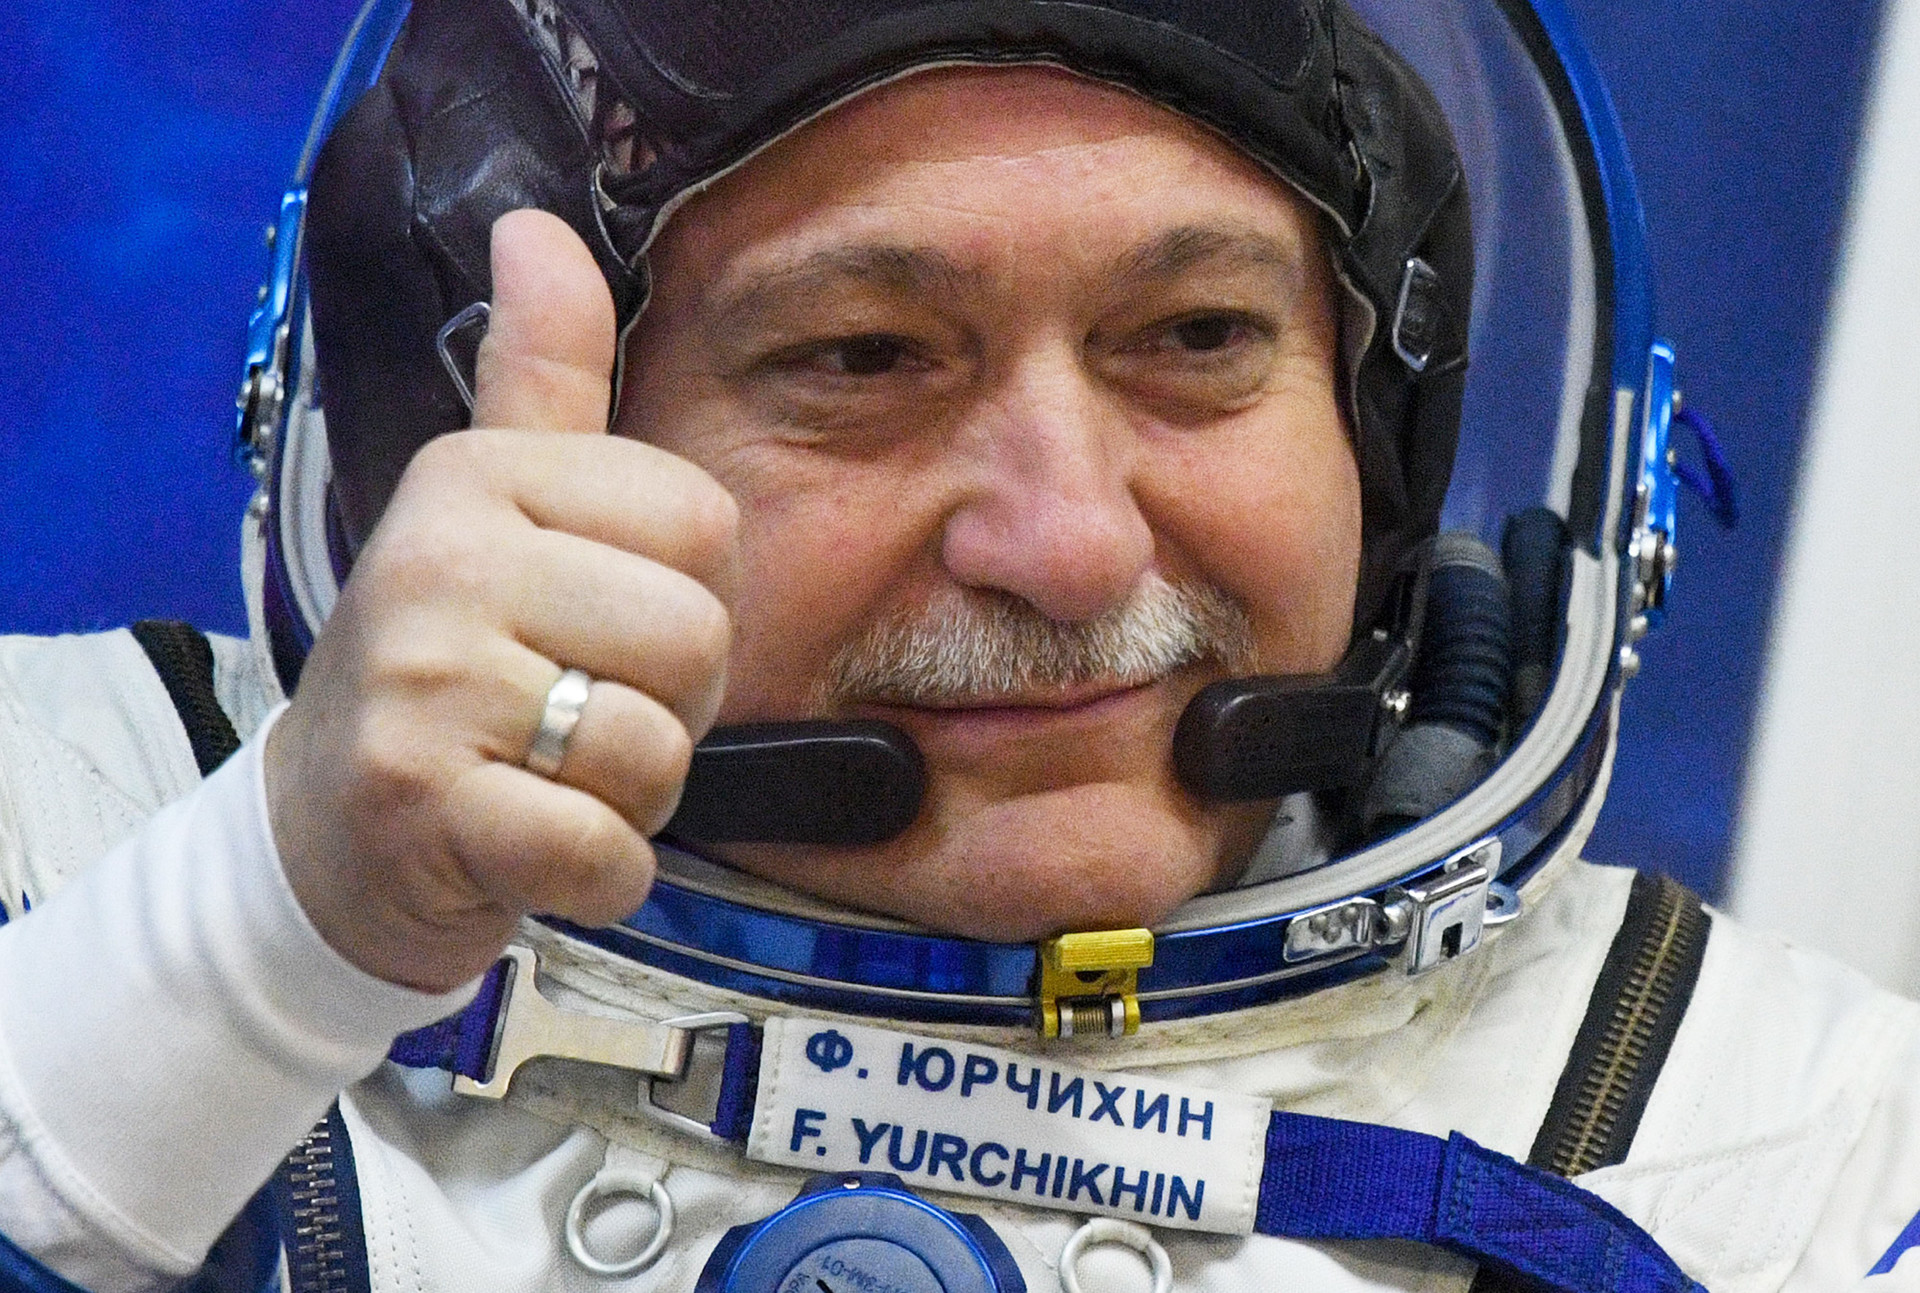 Kozmonaut Fjodor Jurčihin uoči svemirske misije, travanj 2017.

